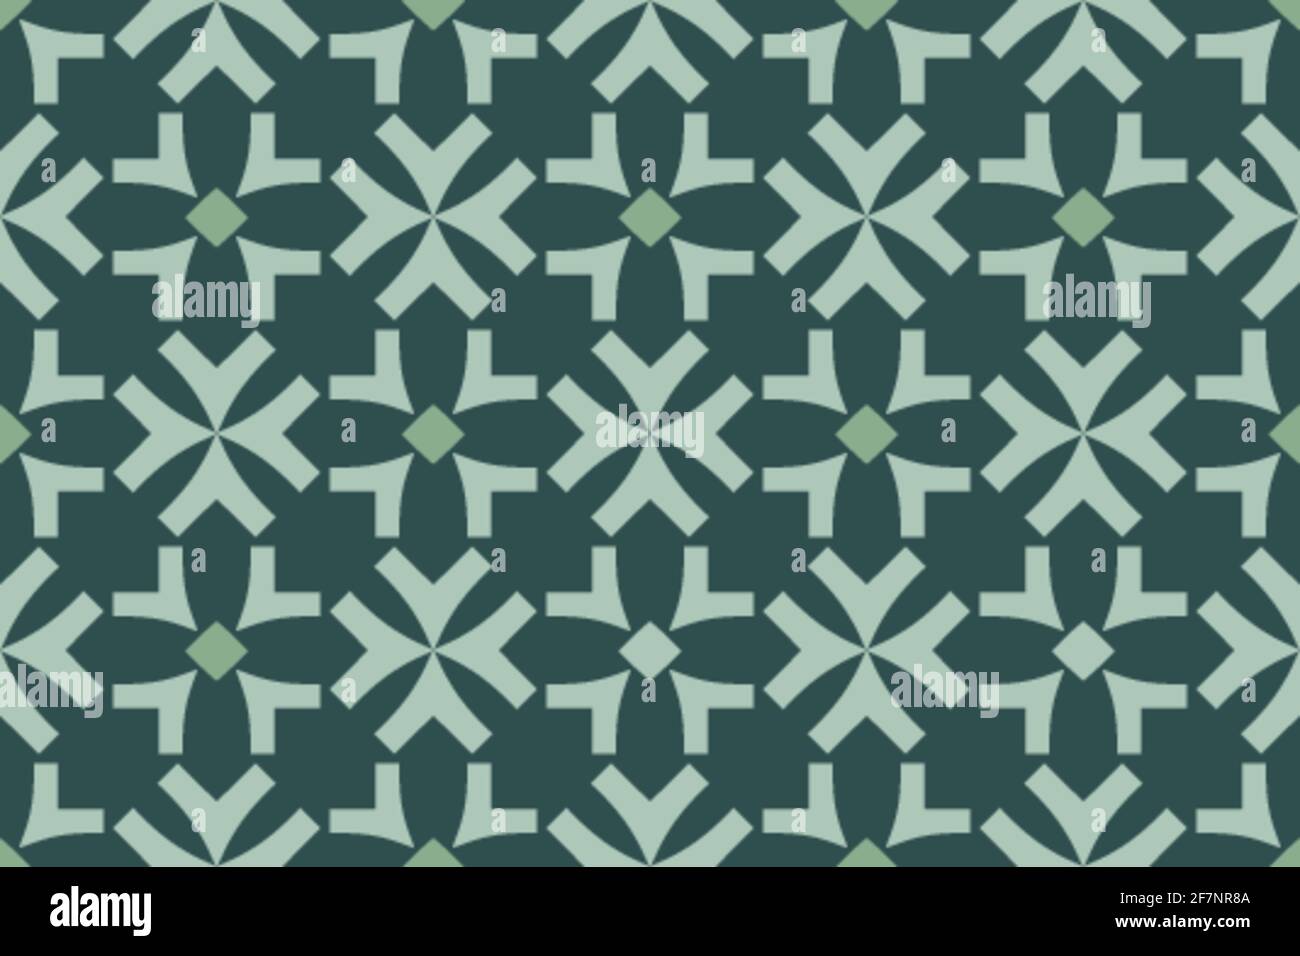 Flocons de neige verts avec un petit carré au milieu des fleurs stylisées pour les dessins en papier, la marque, l'emballage, les meubles, les objets intérieurs et les surfaces Illustration de Vecteur